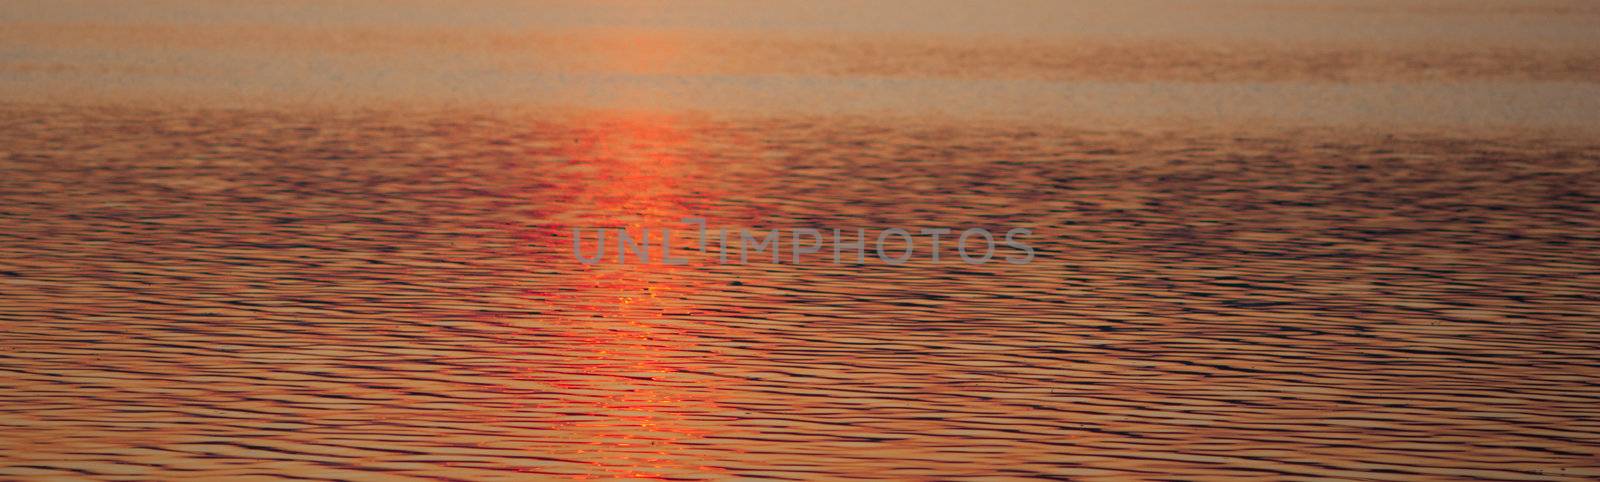 Sunset Reflection by toliknik